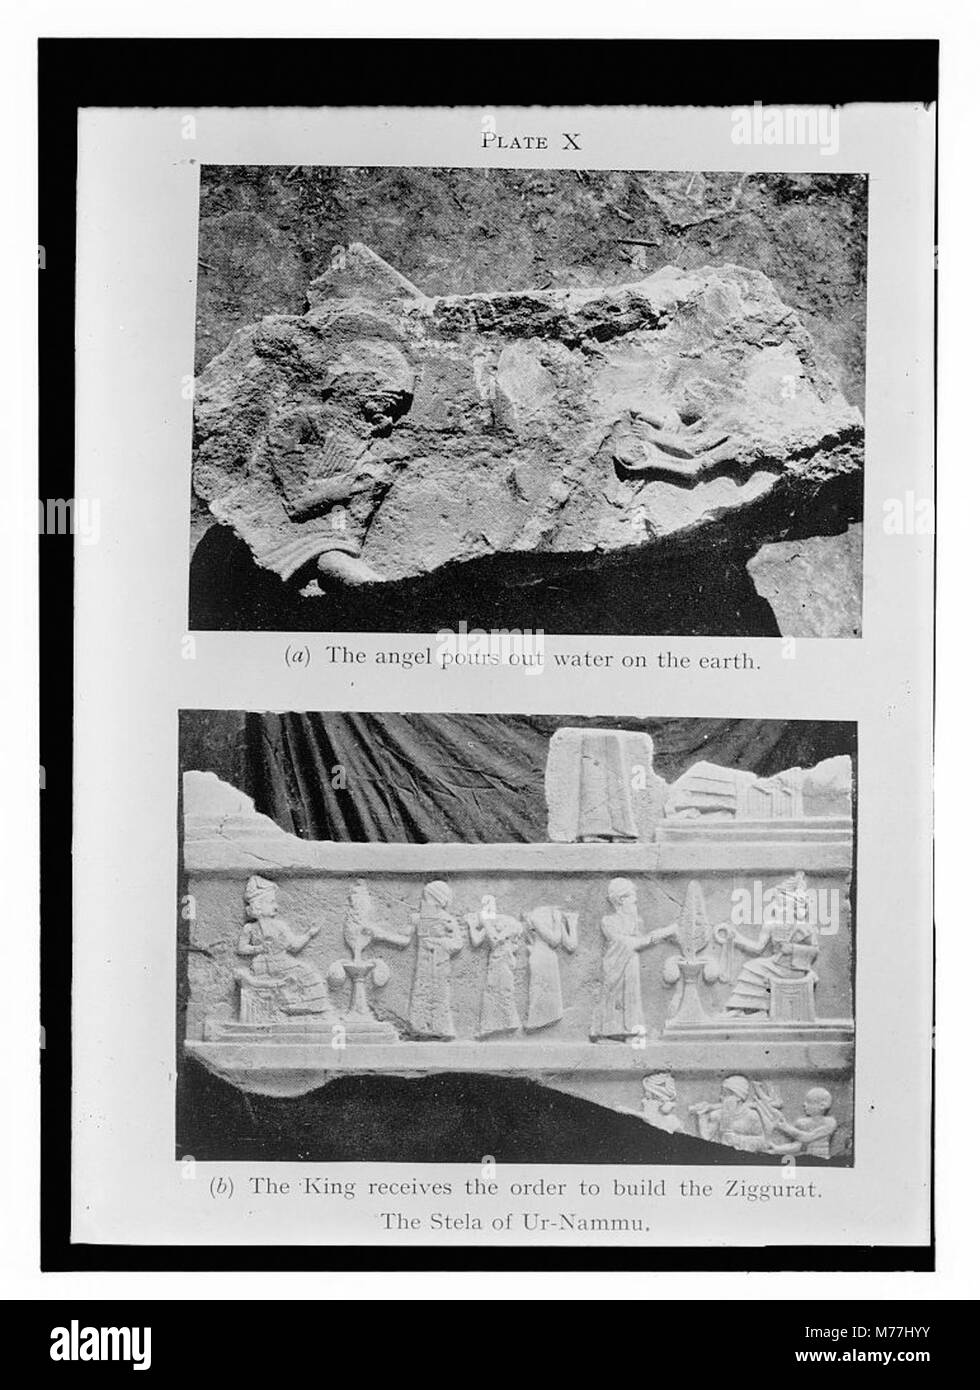 L'illustration du livre montrant des bas-reliefs de la Stèle d'Ur-nammou trouvés lors de fouilles archéologiques à Ur) LOC.11533 matpc Banque D'Images